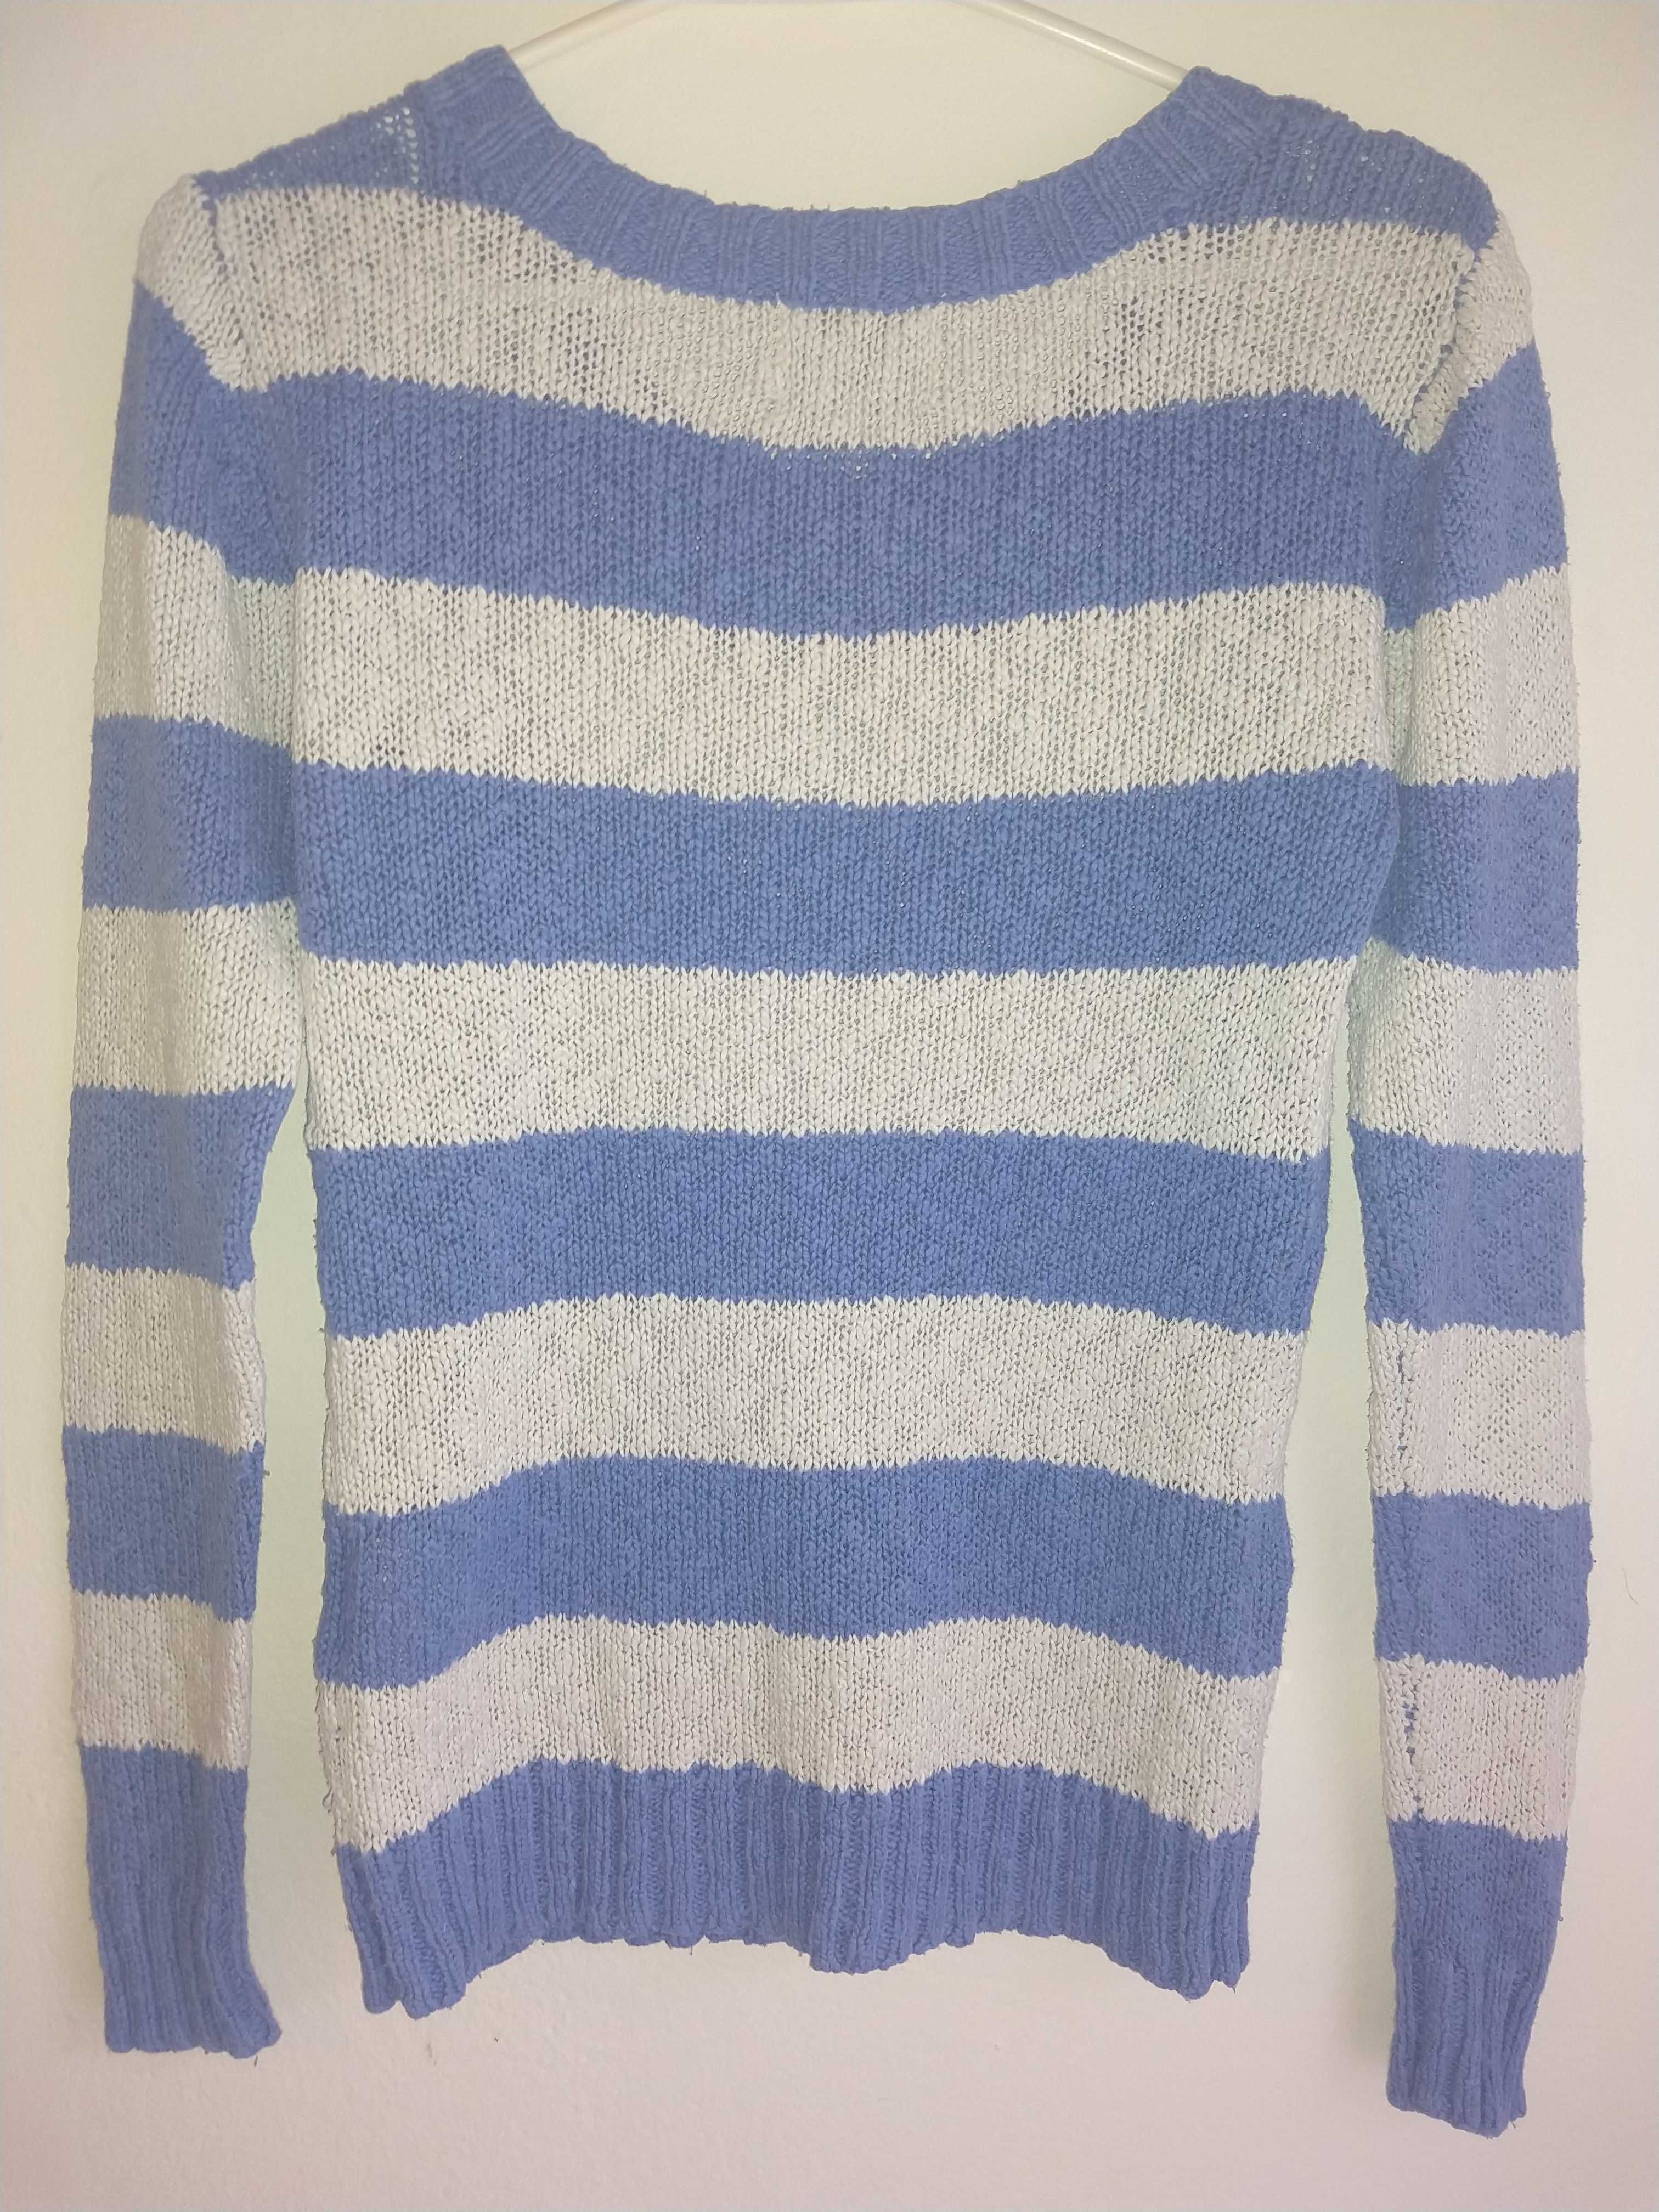 Sweter niebiesko biały w paski, dekolt w łódeczkę - wymiary w opisie